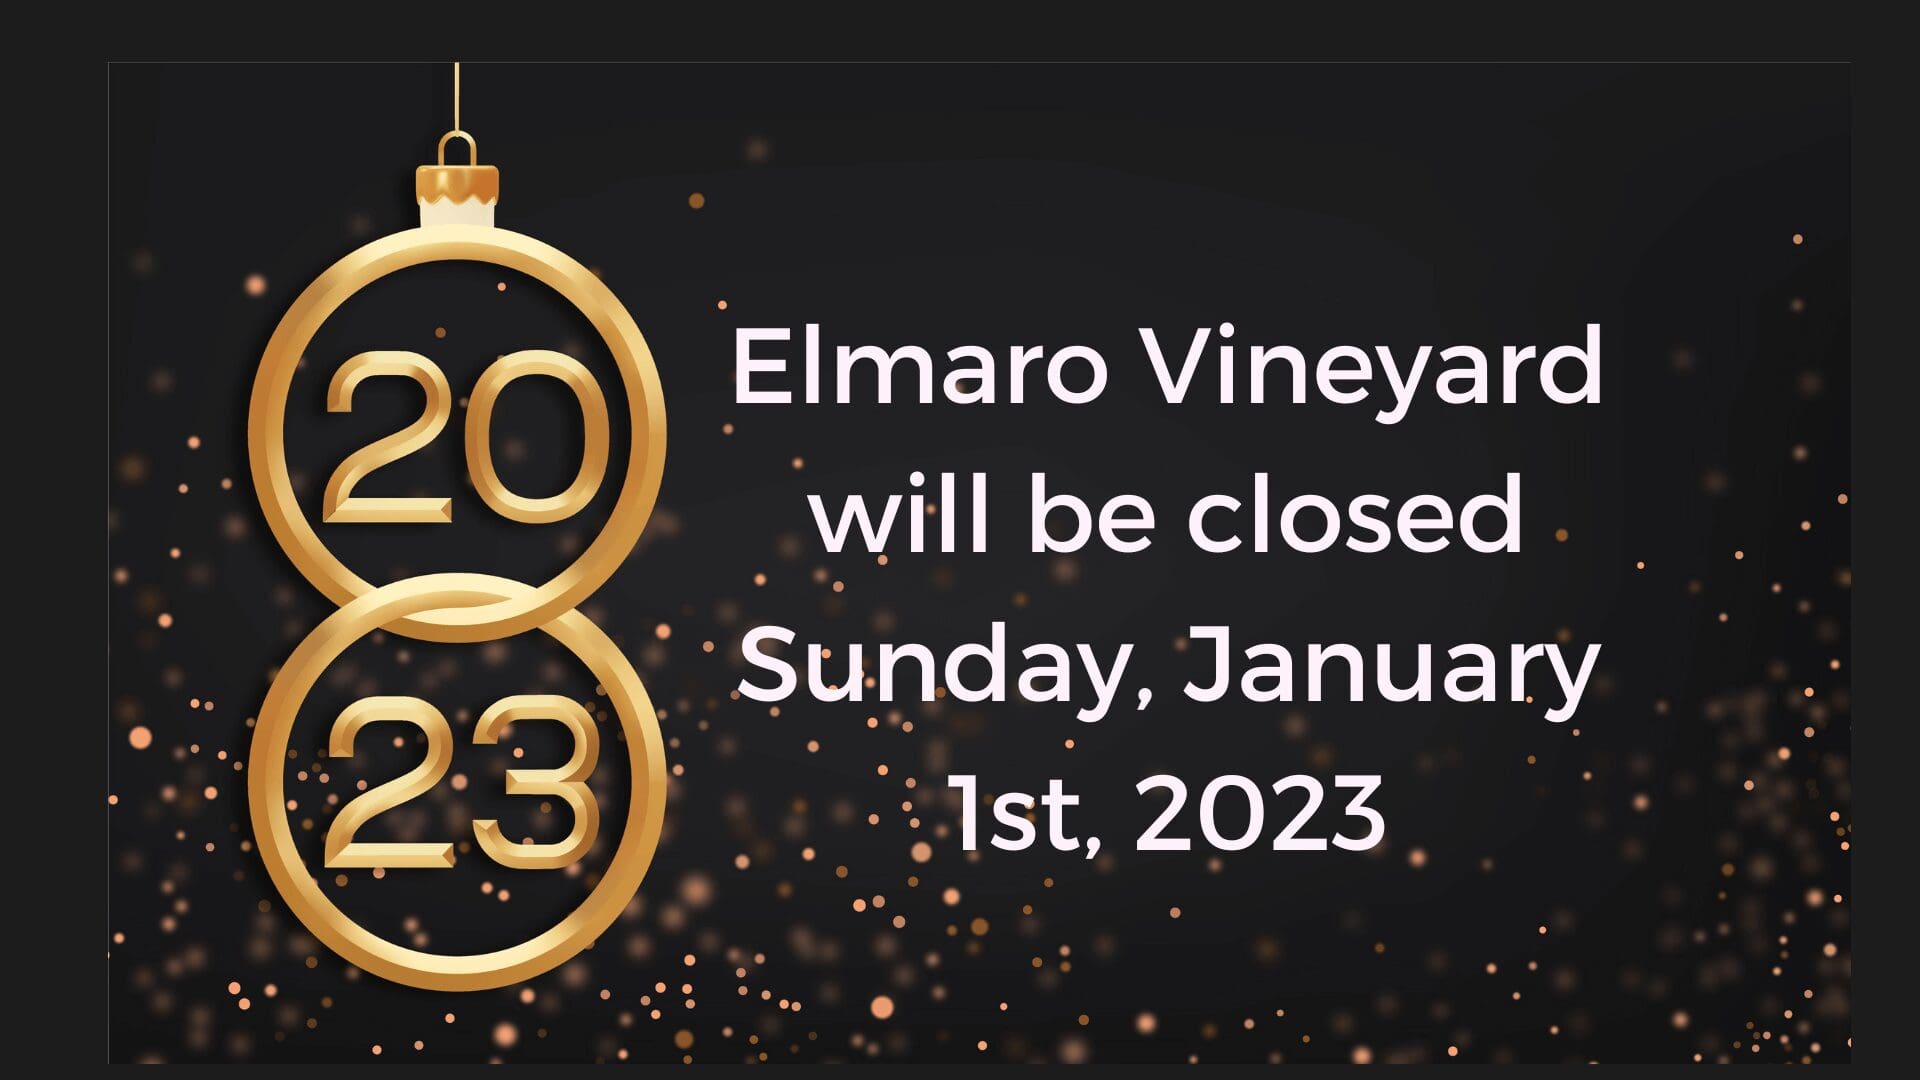 Elmo vineyard will be closed sunday, january 1st, 2021.